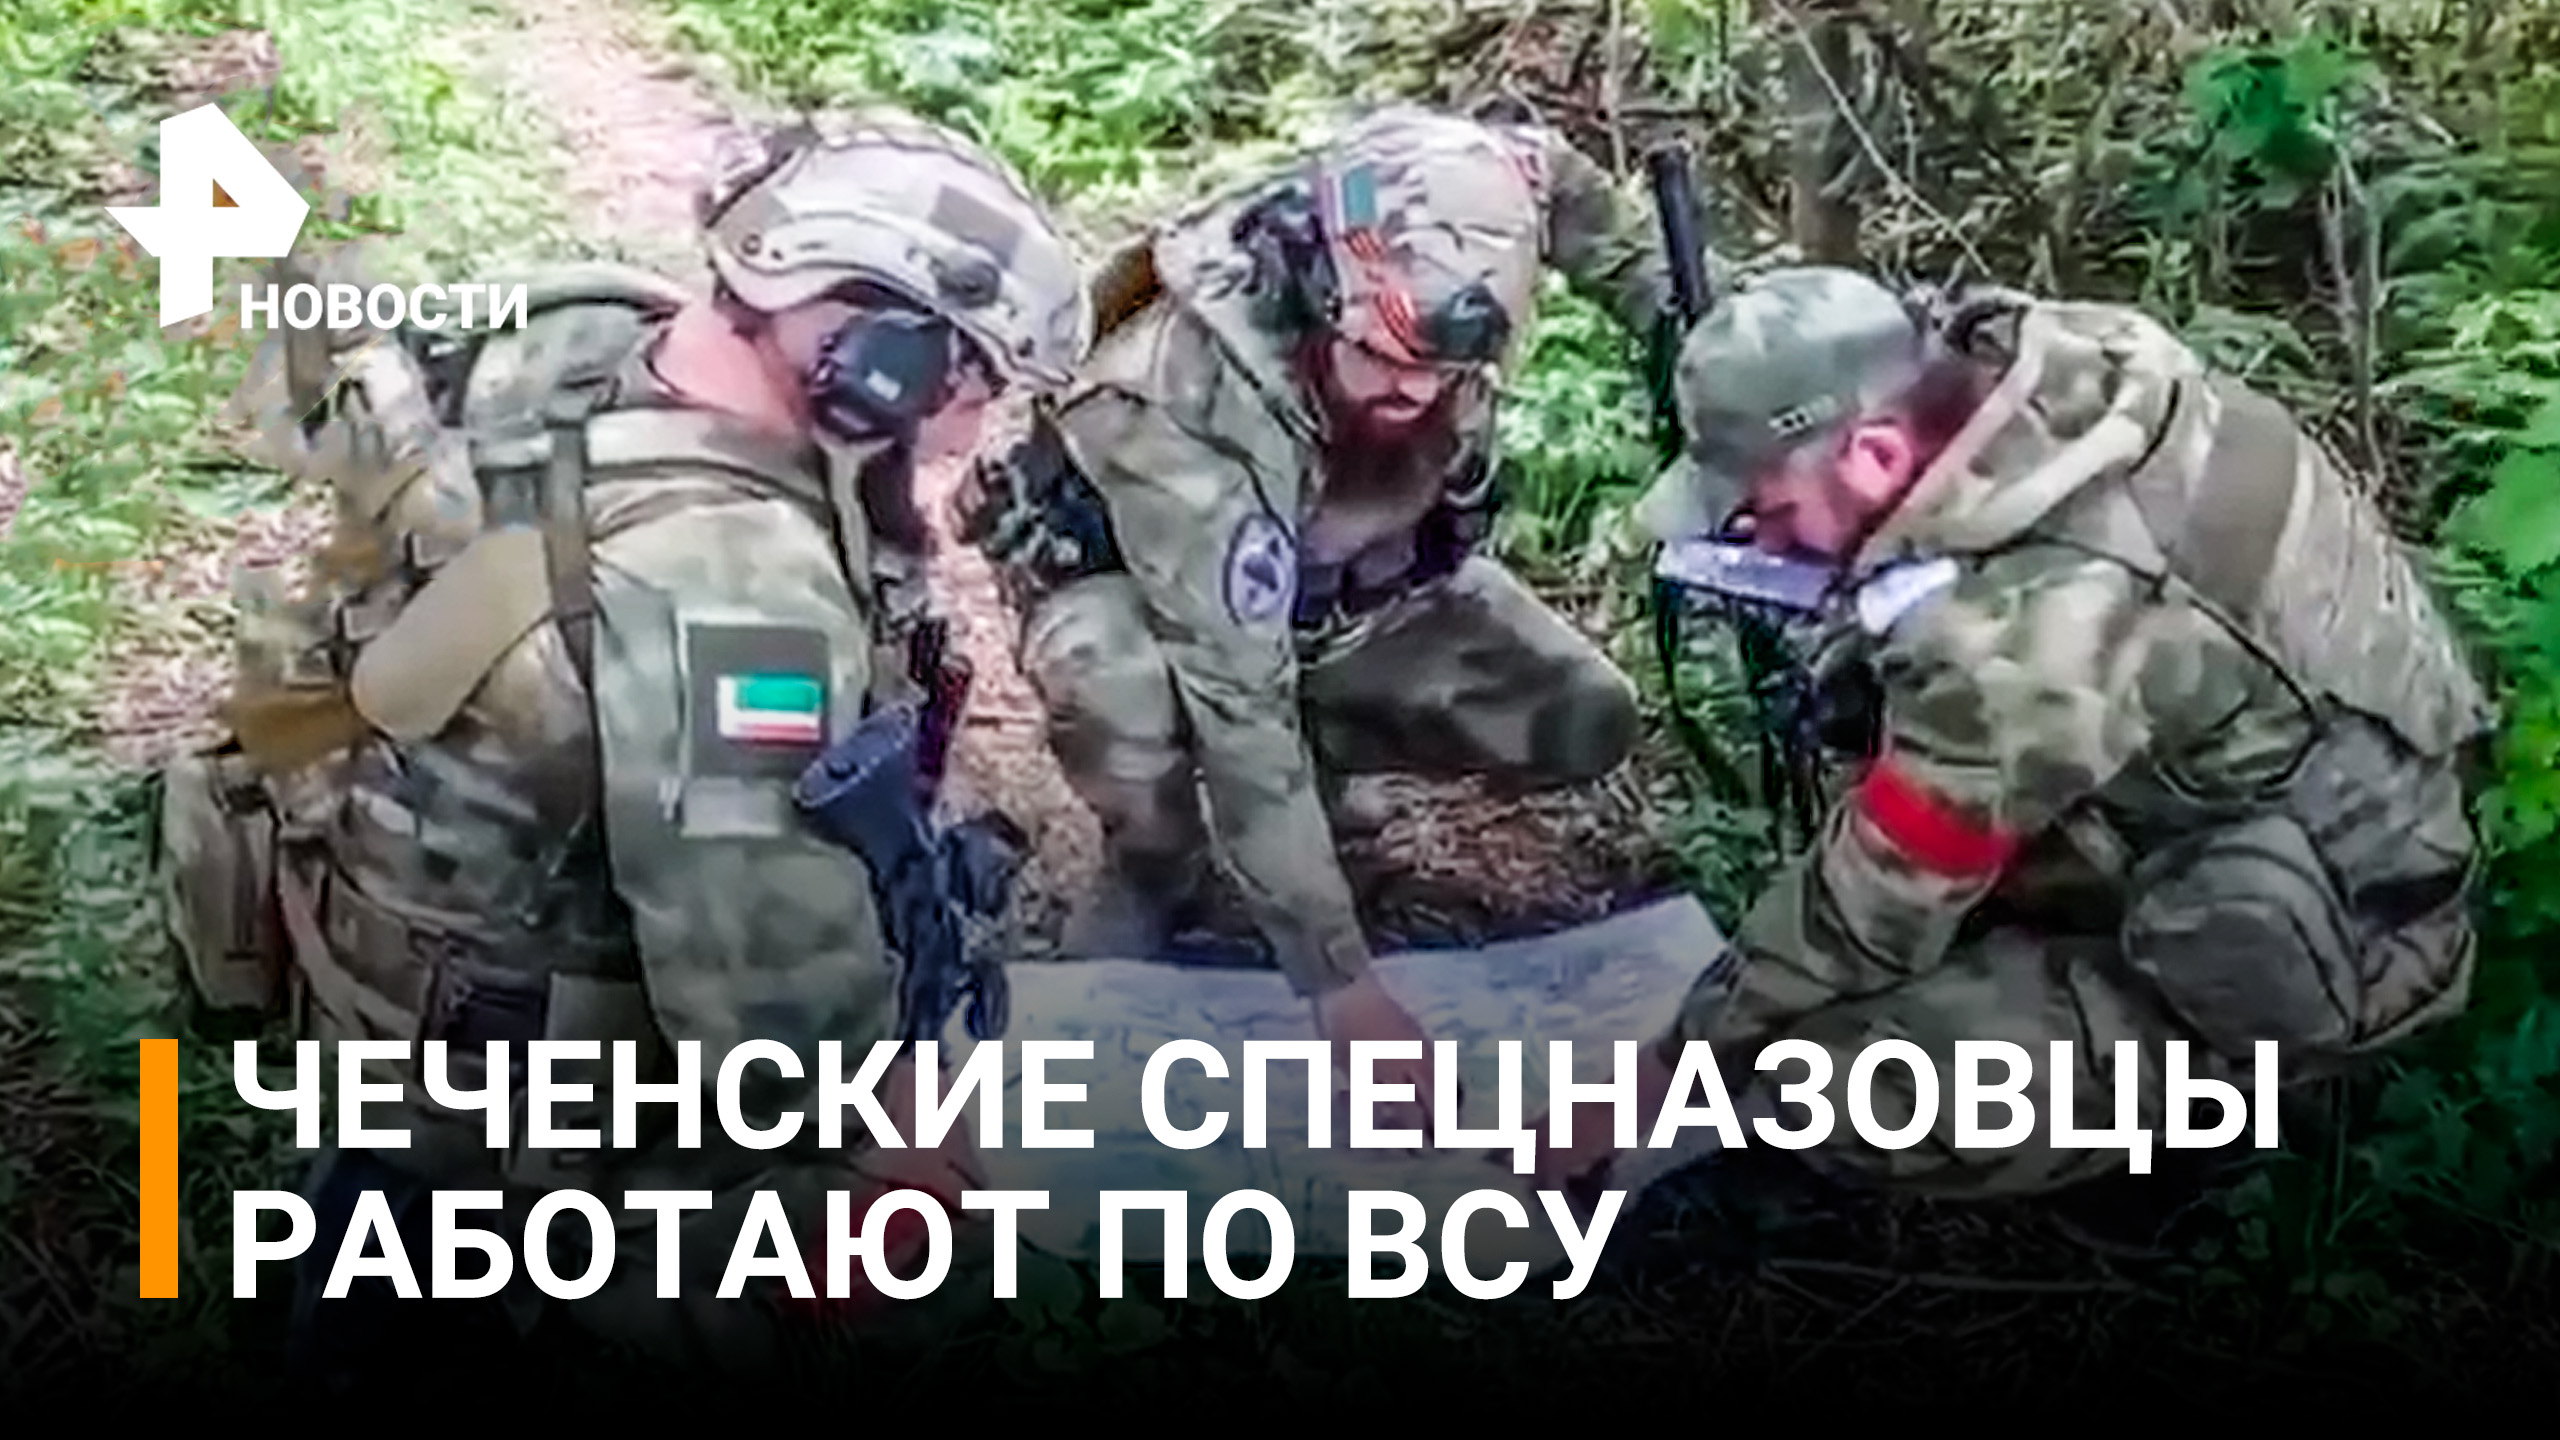 Новые кадры работы чеченского спецназа на Украине опубликовал Рамзан Кадыров / РЕН Новости